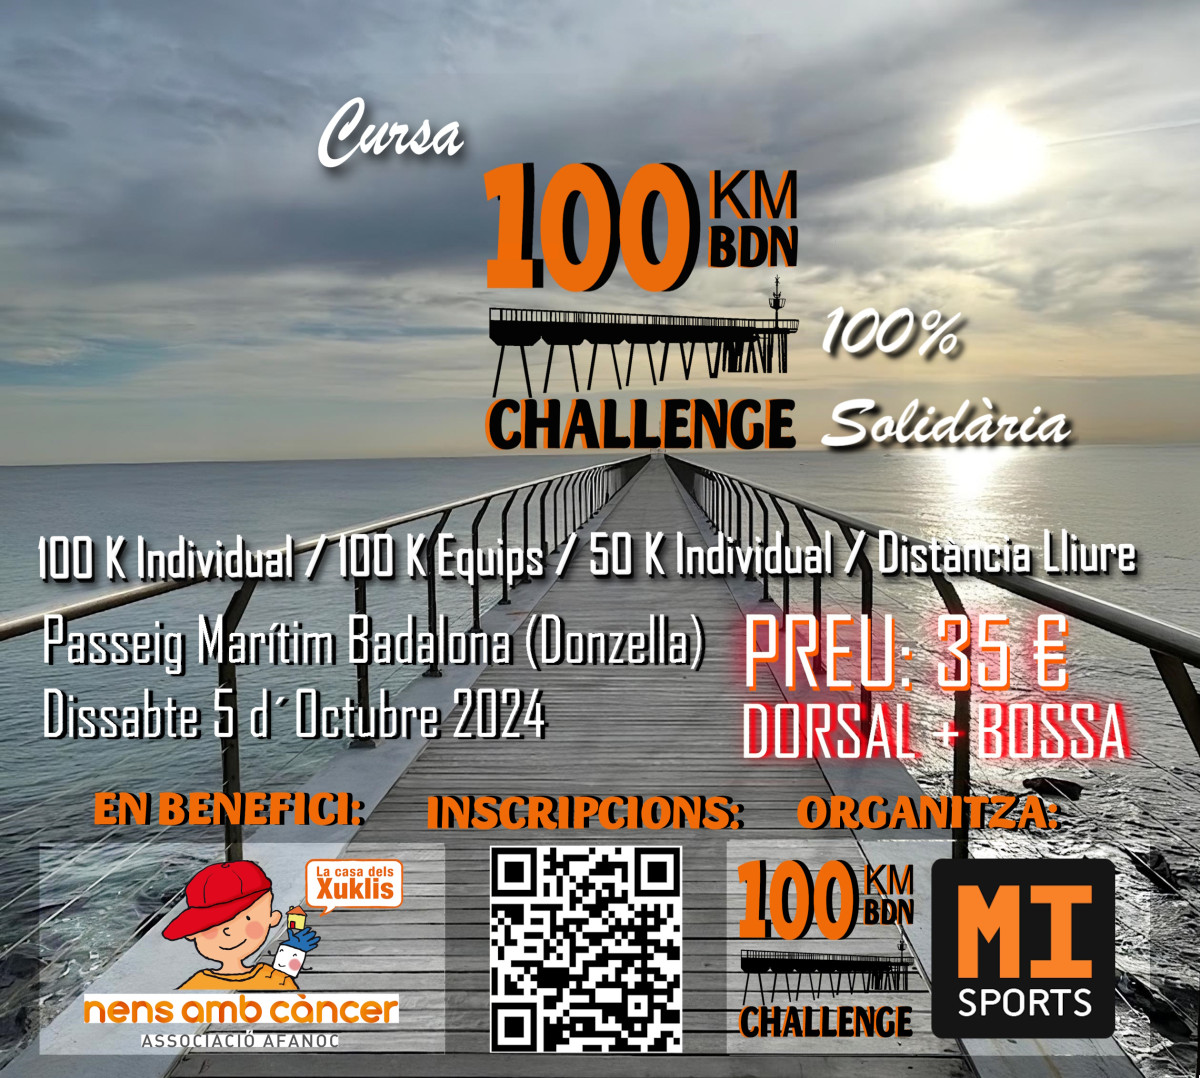 100km CHALLENGE BDN